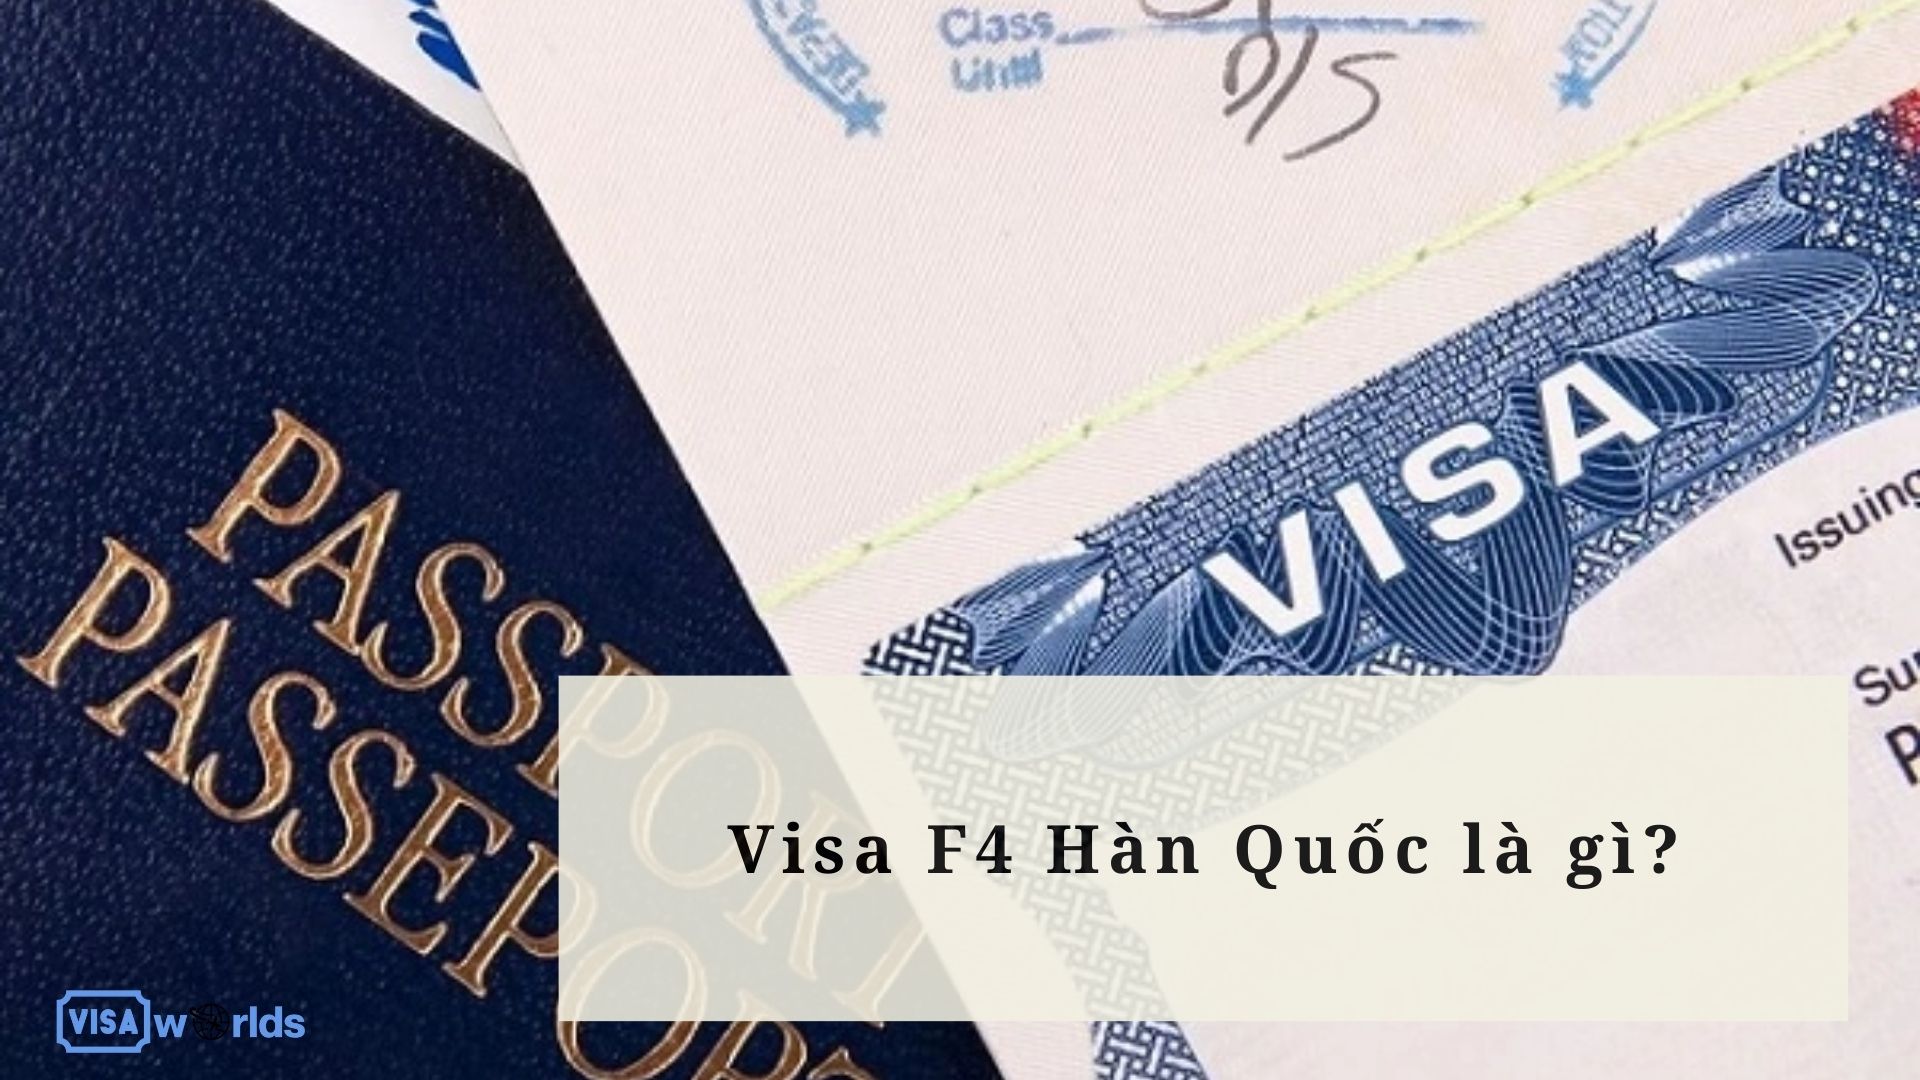 Visa F4 Hàn Quốc là gì